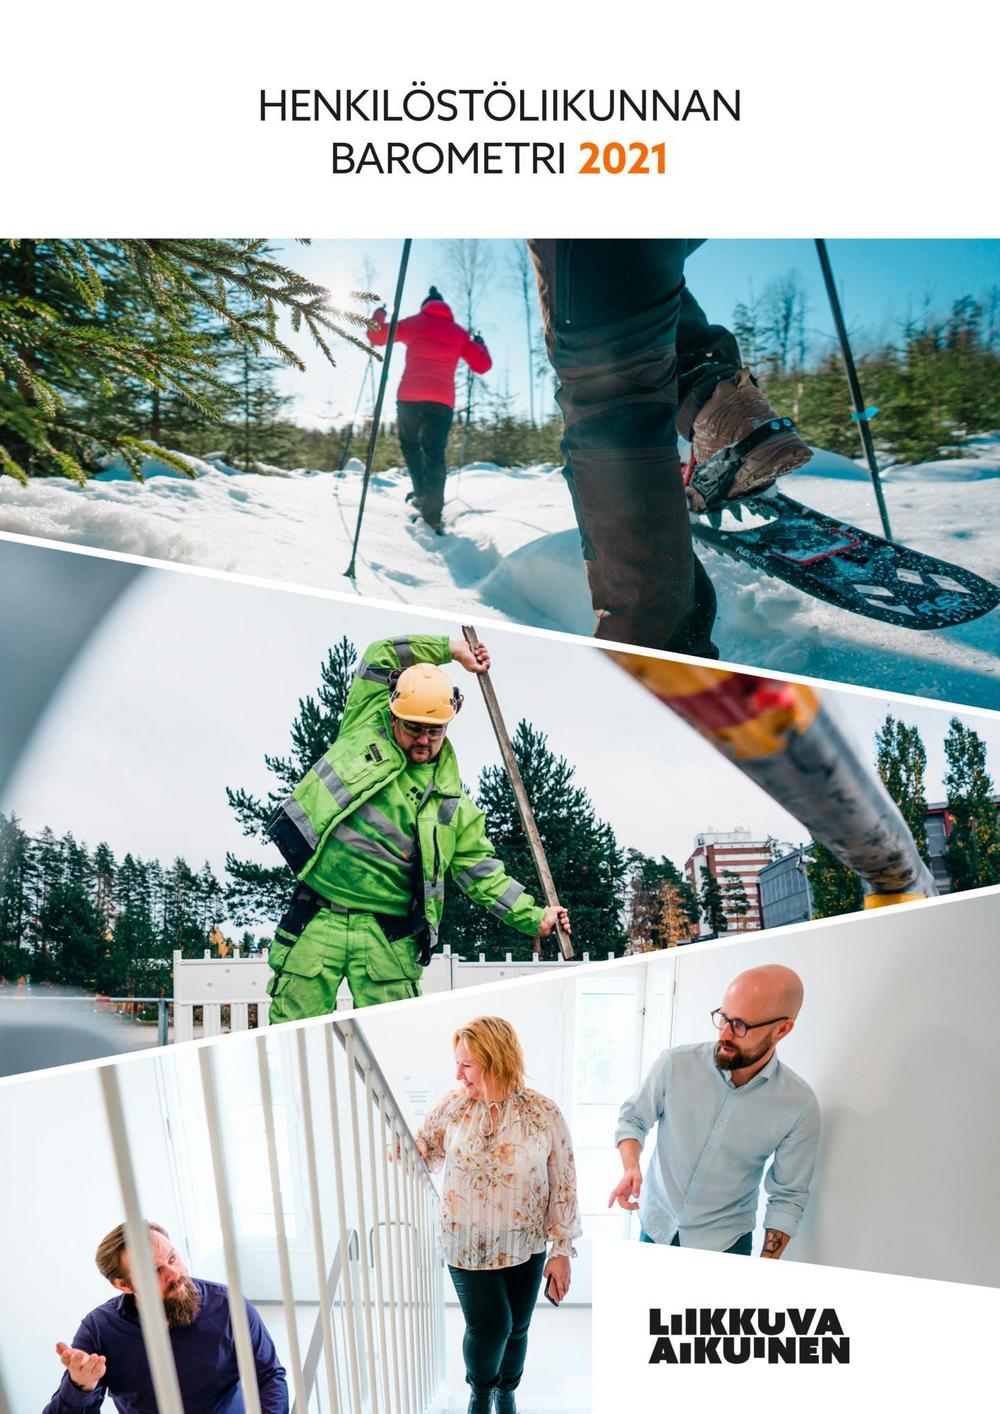 Kuvassa Henkilöstöliikunnan Barometri 2021 julkaisun kansi. Kuvissa lumikenkäilijöitä, työmies jumppamassa harjanvarrella ja portaita nousevat mies ja nainen.